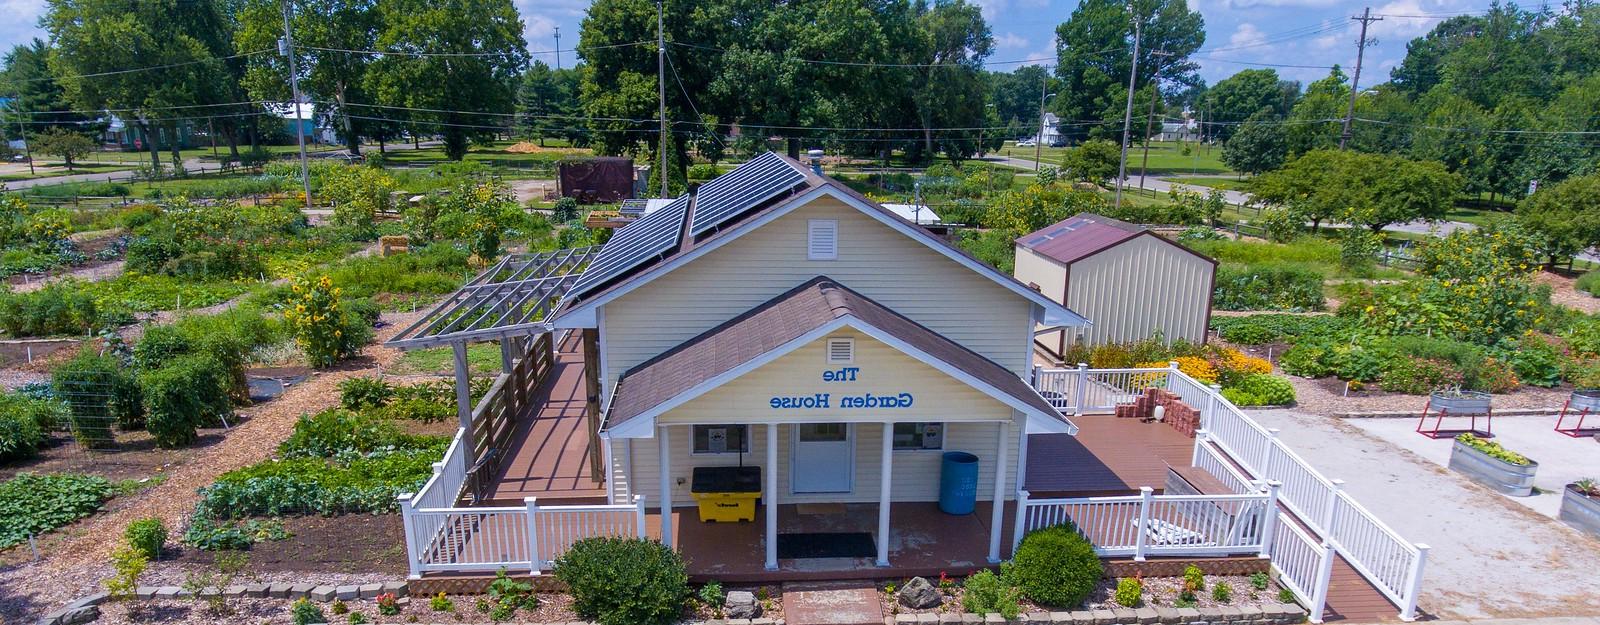 屋顶右侧有太阳能板的黄色房子